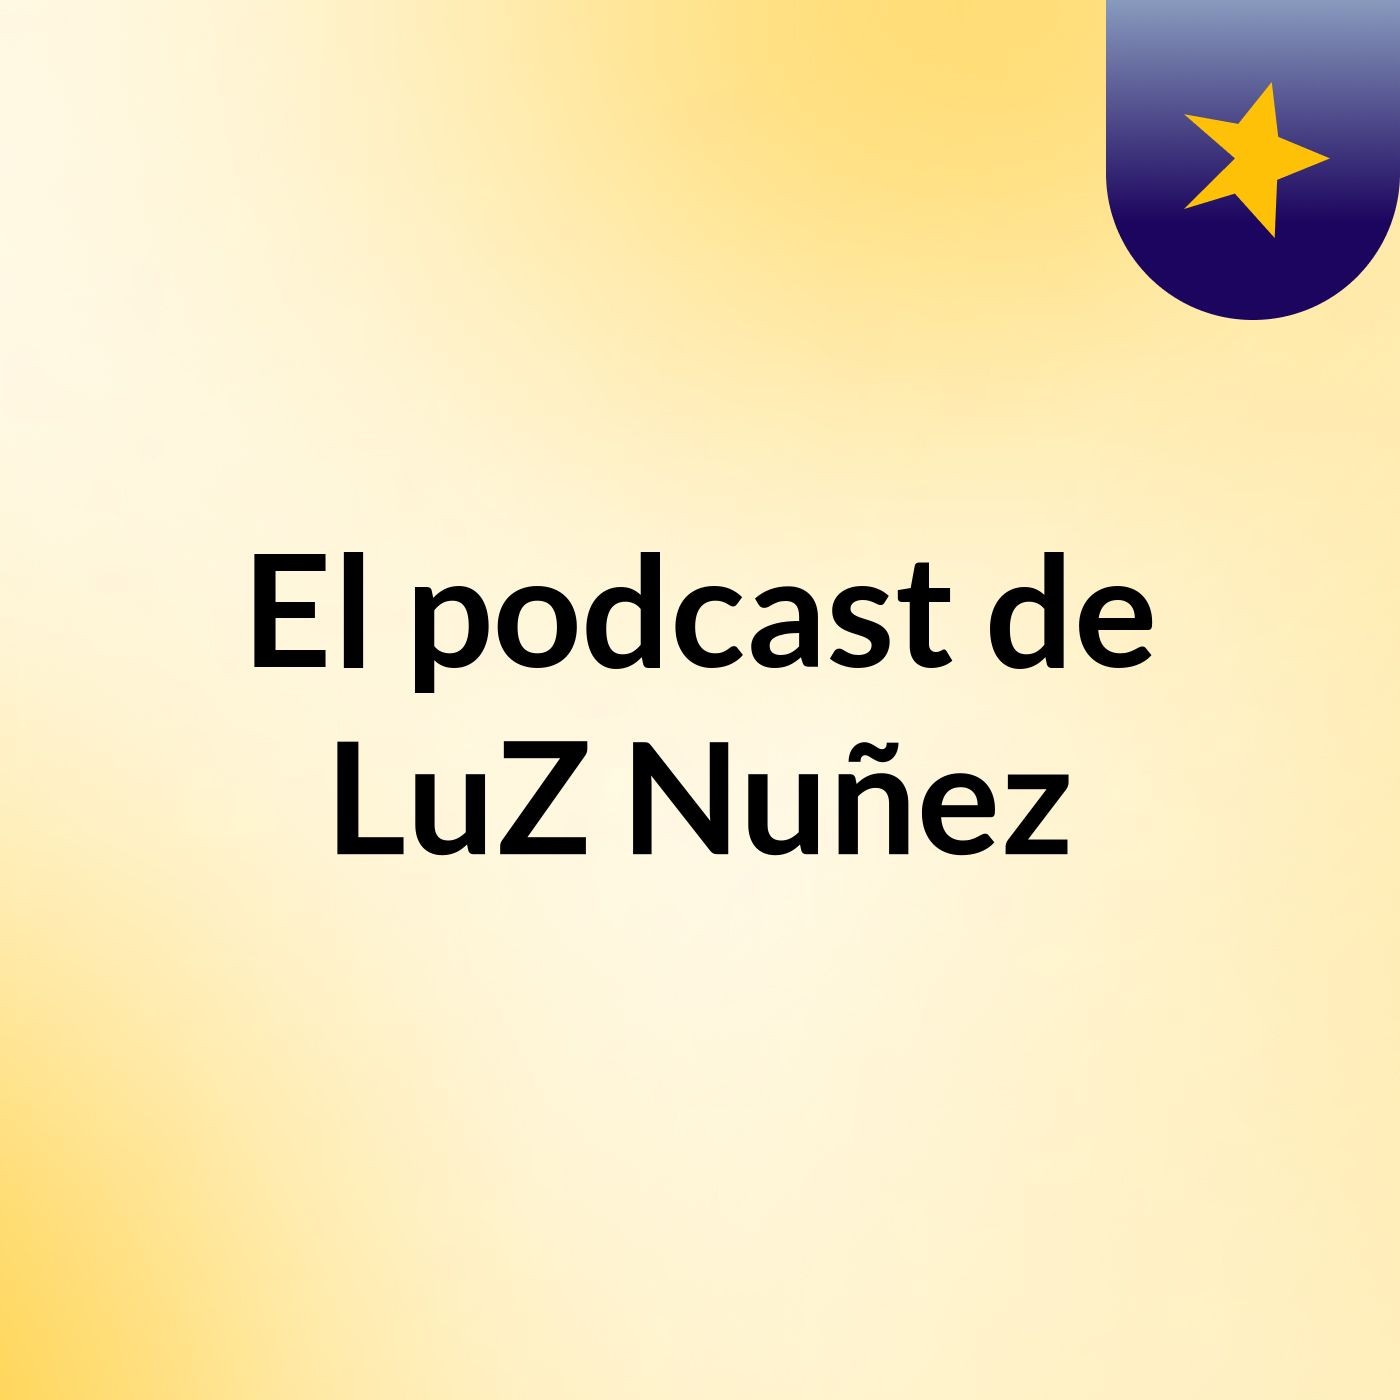 El podcast de LuZ Nuñez